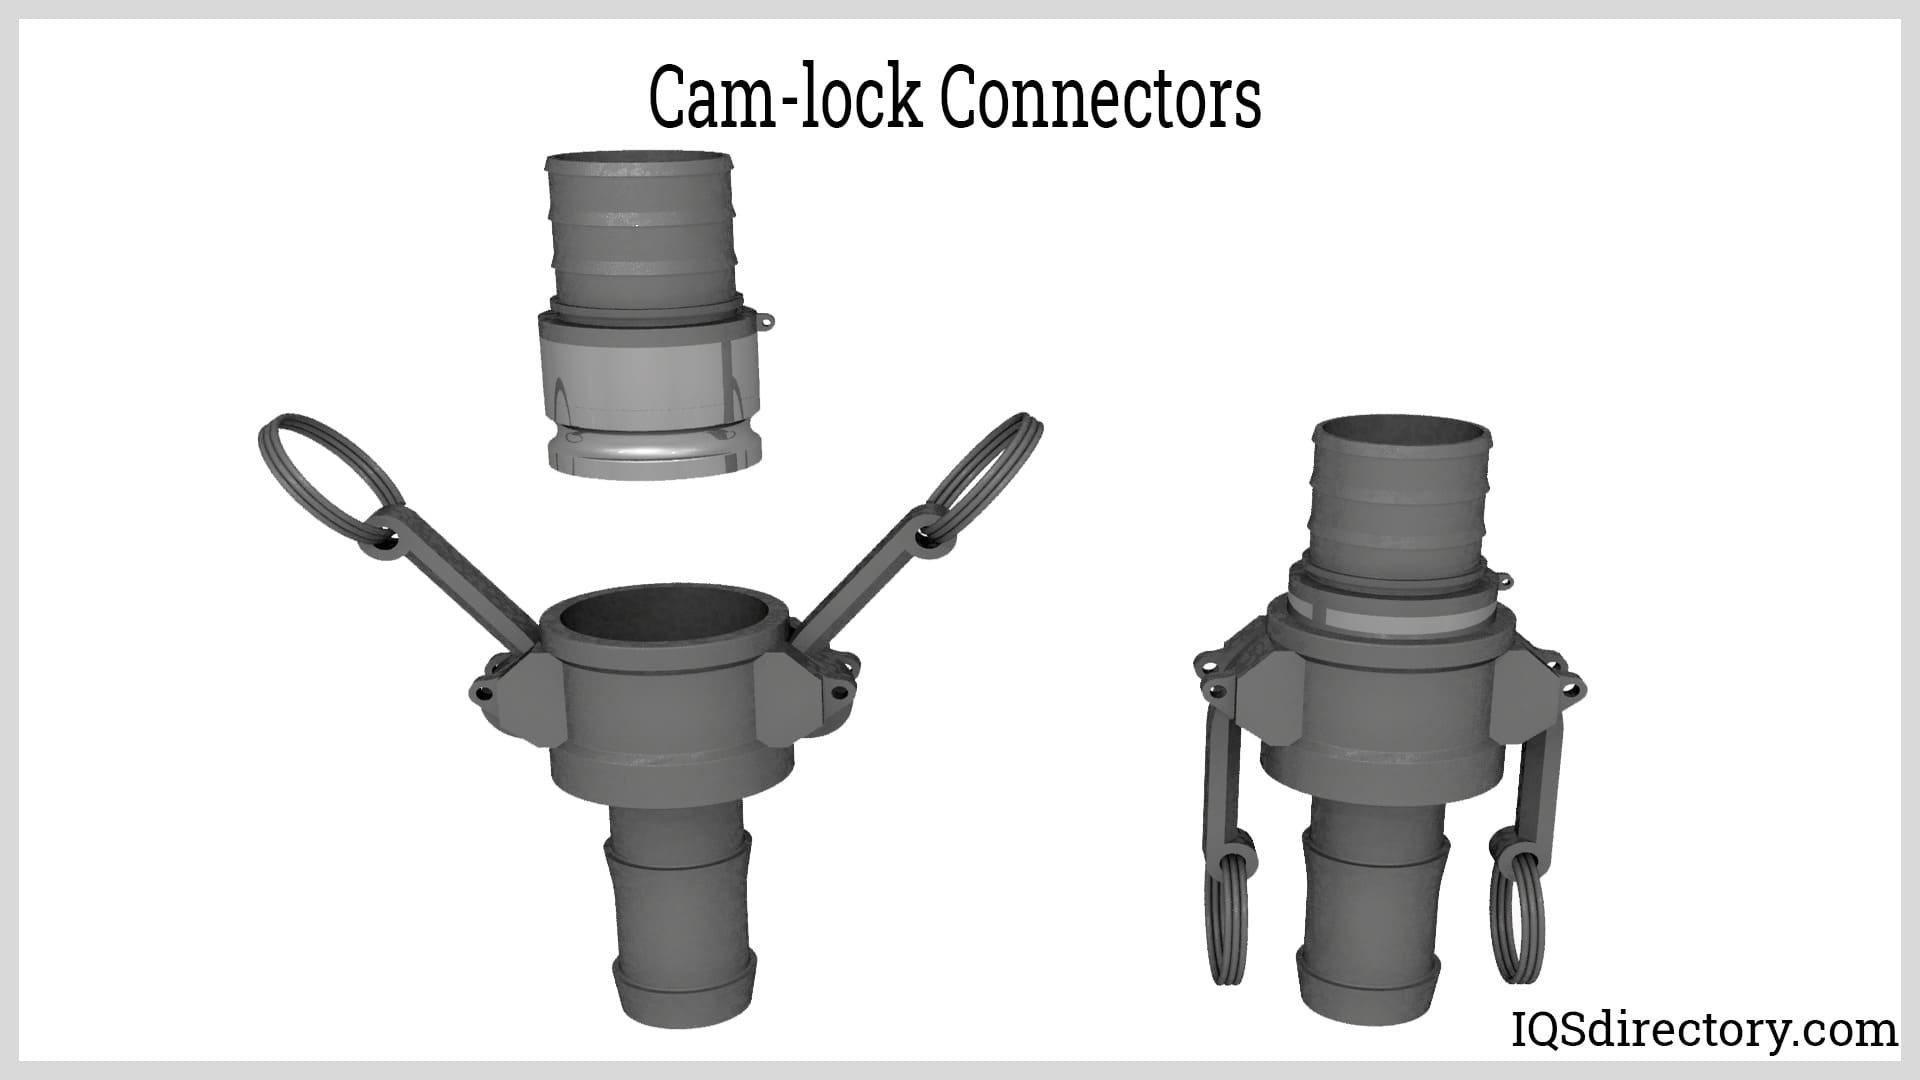 Cam-lock Connectors